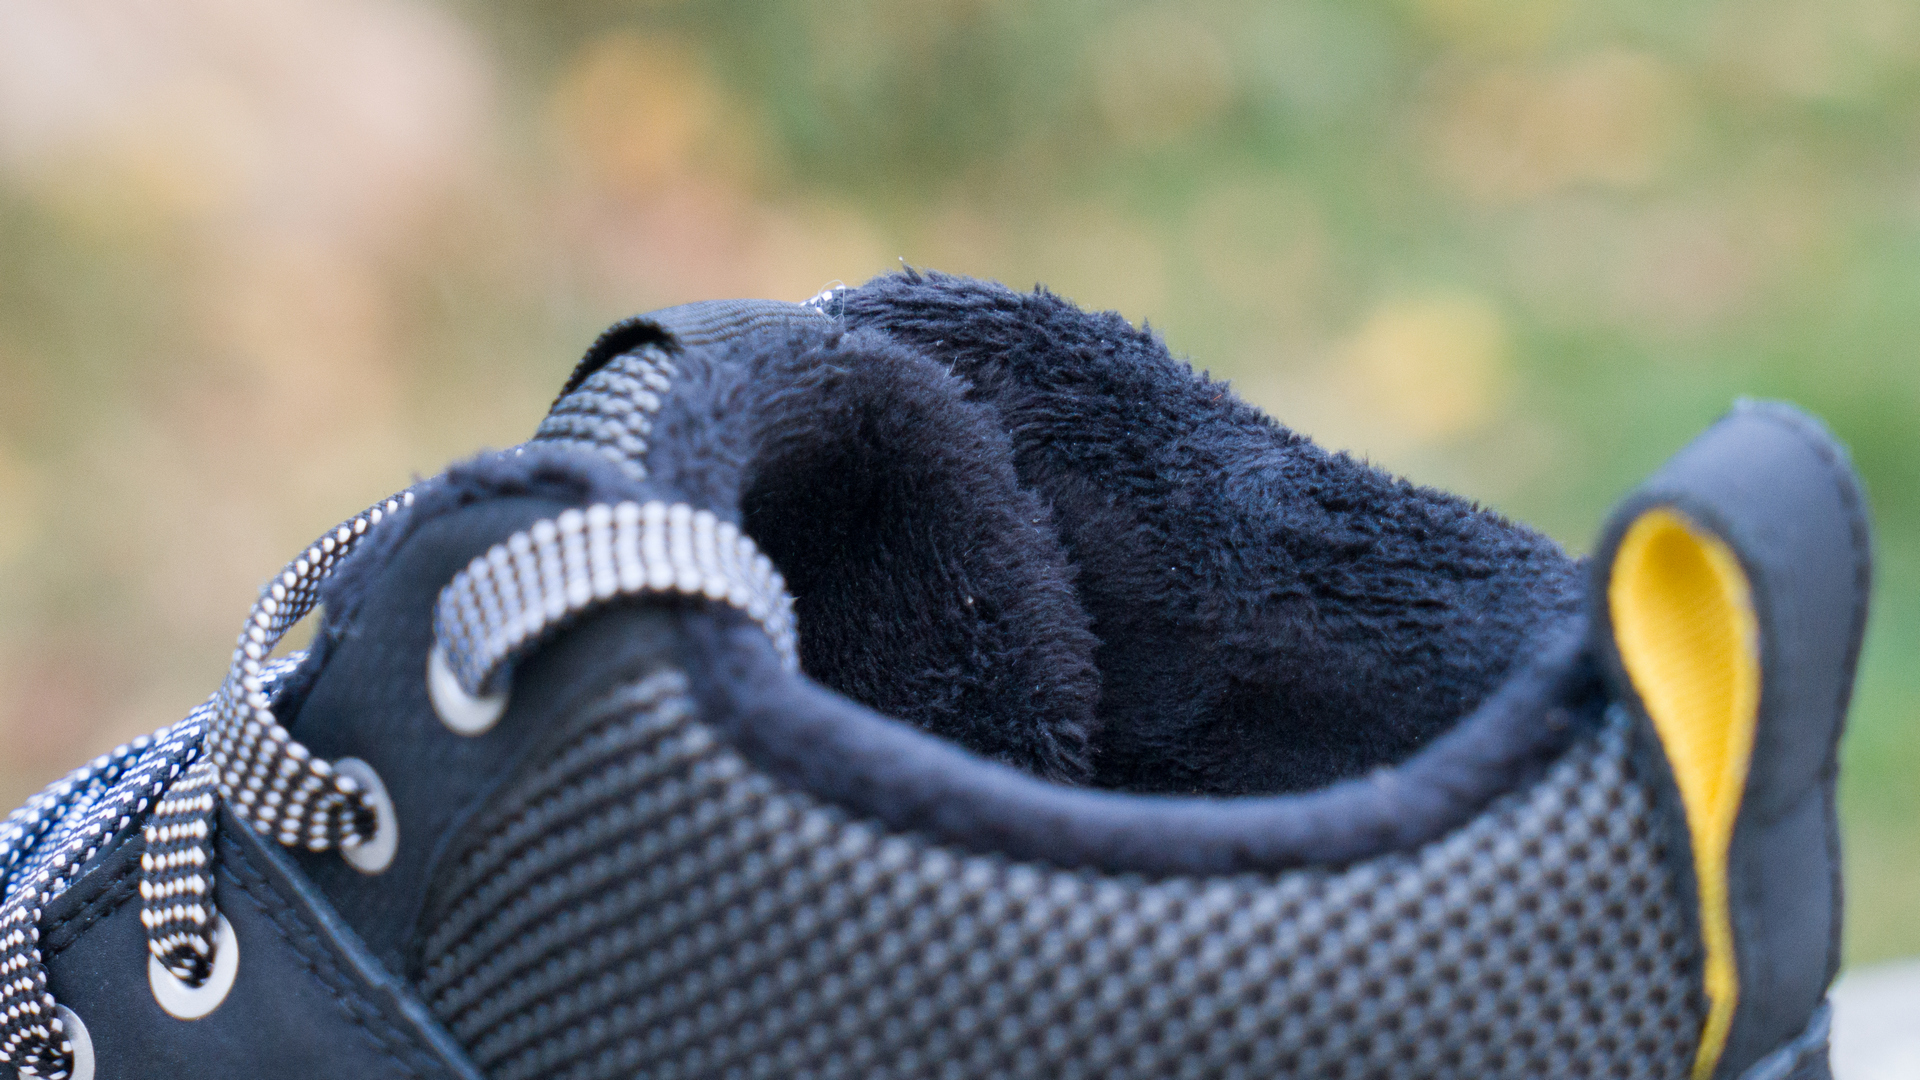 Syntetická kožešina zabraňuje uníku tepla mezi vaší nohou a botou